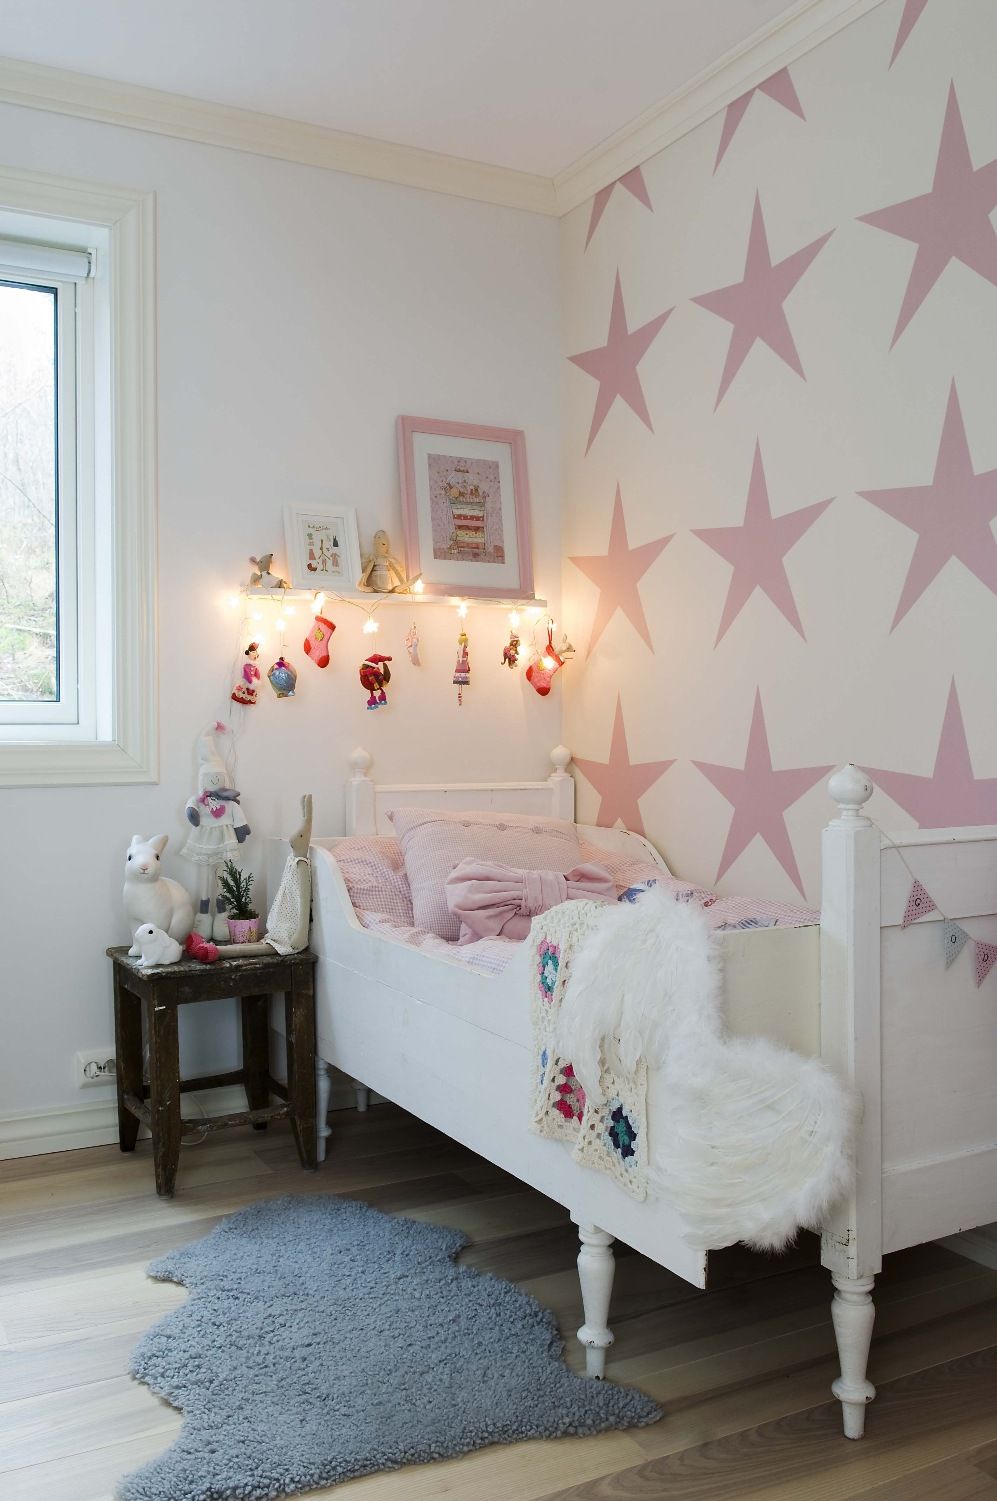 Photo 5 - Papier peint avec étoiles roses dans la chambre de la fille 